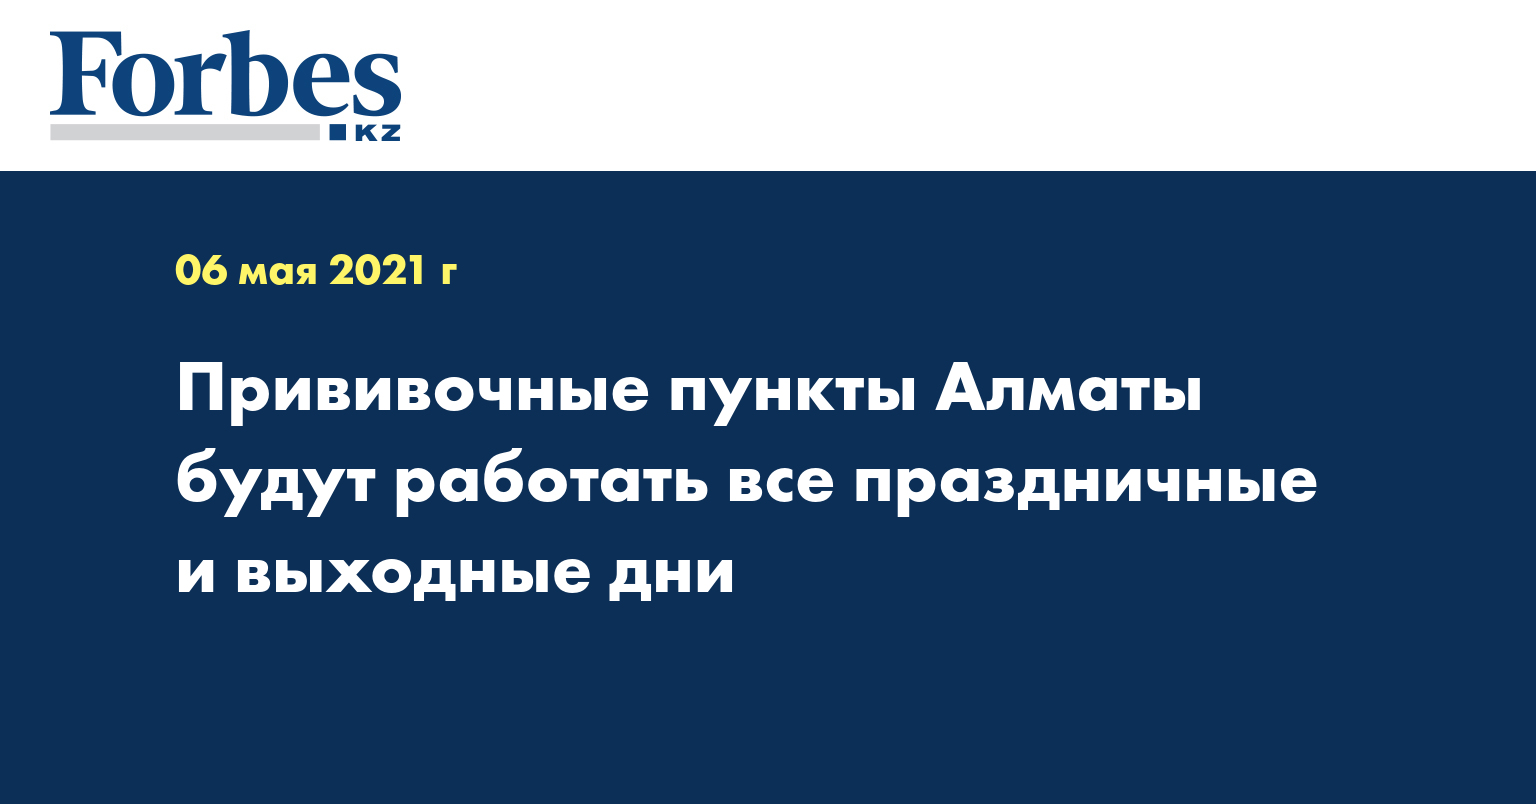  Прививочные пункты Алматы будут работать все праздничные и выходные дни